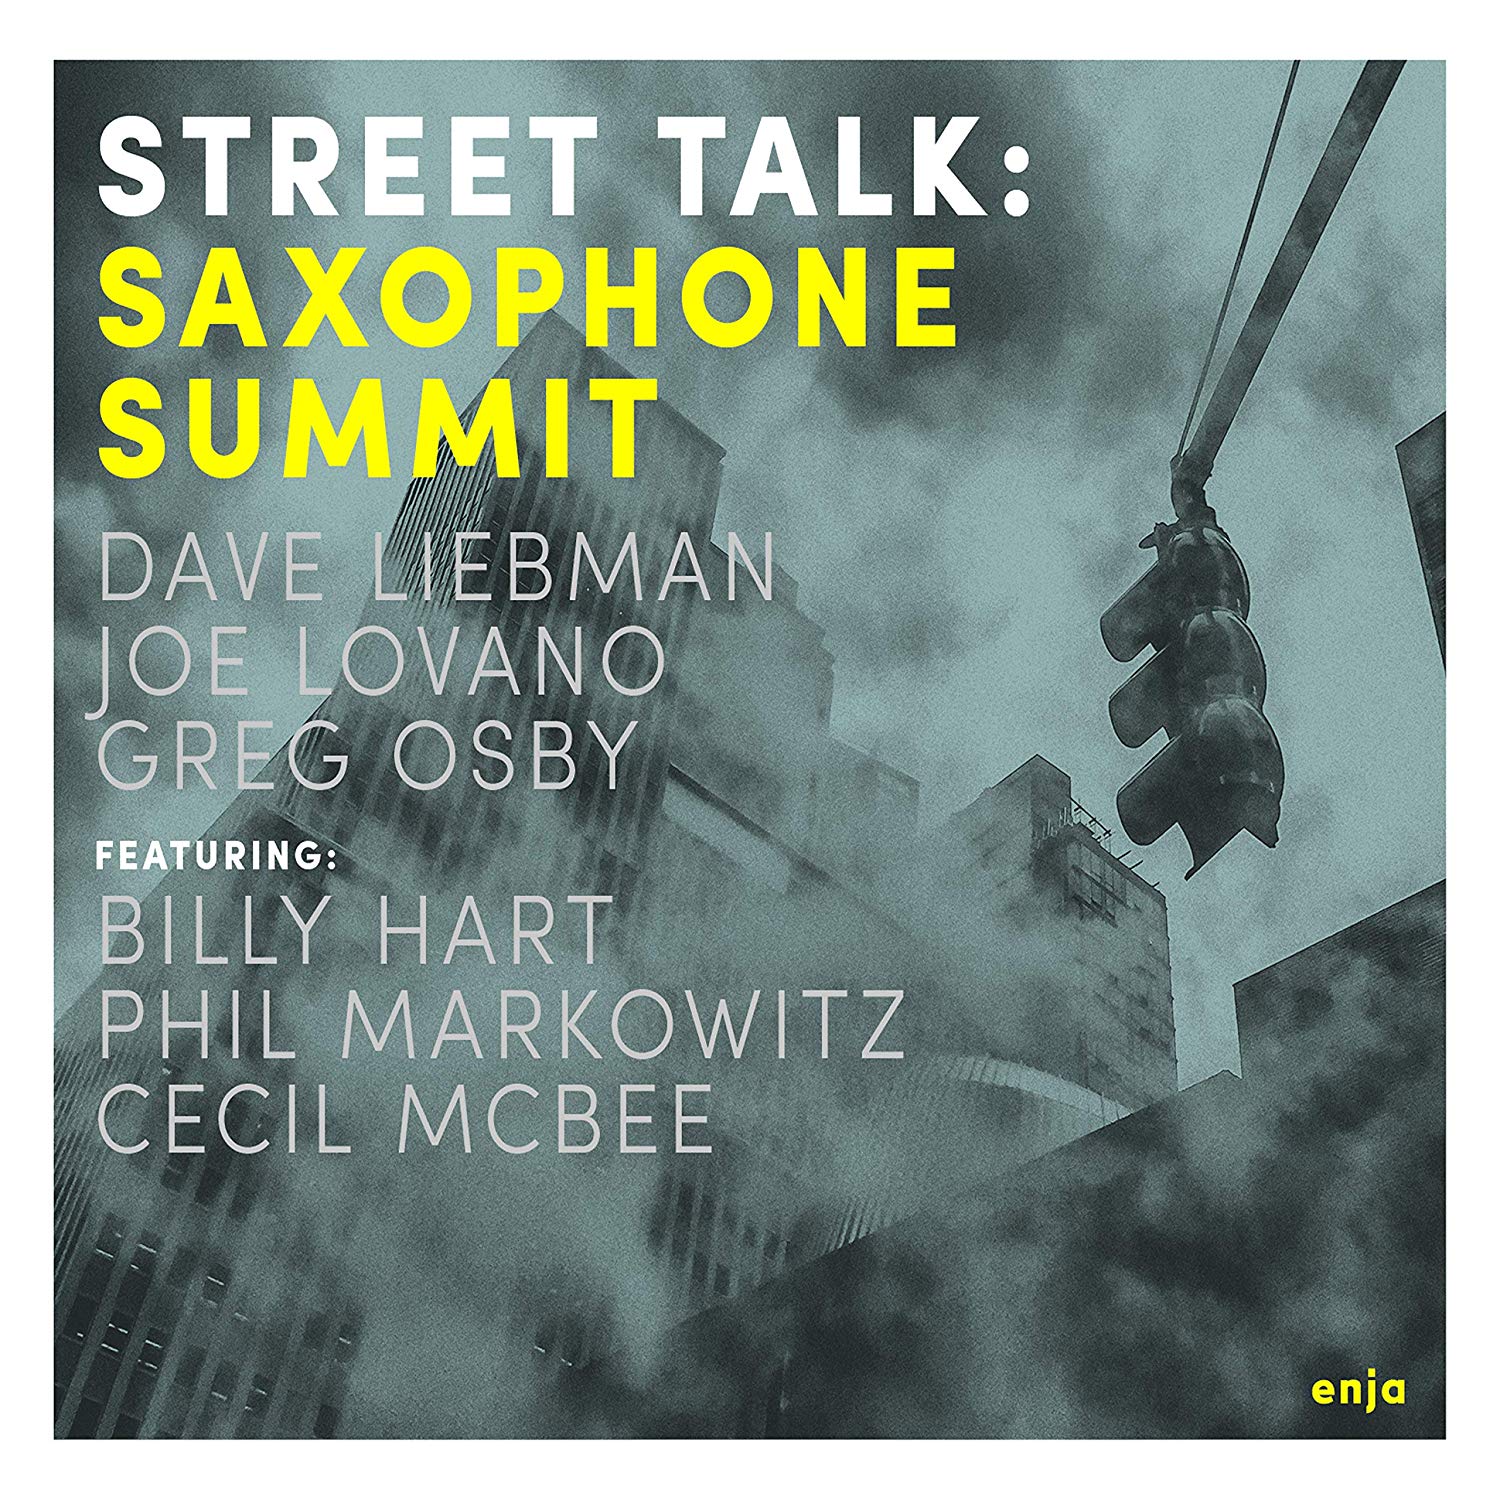 SAXOPHONE SUMMIT - Street Talk cover 